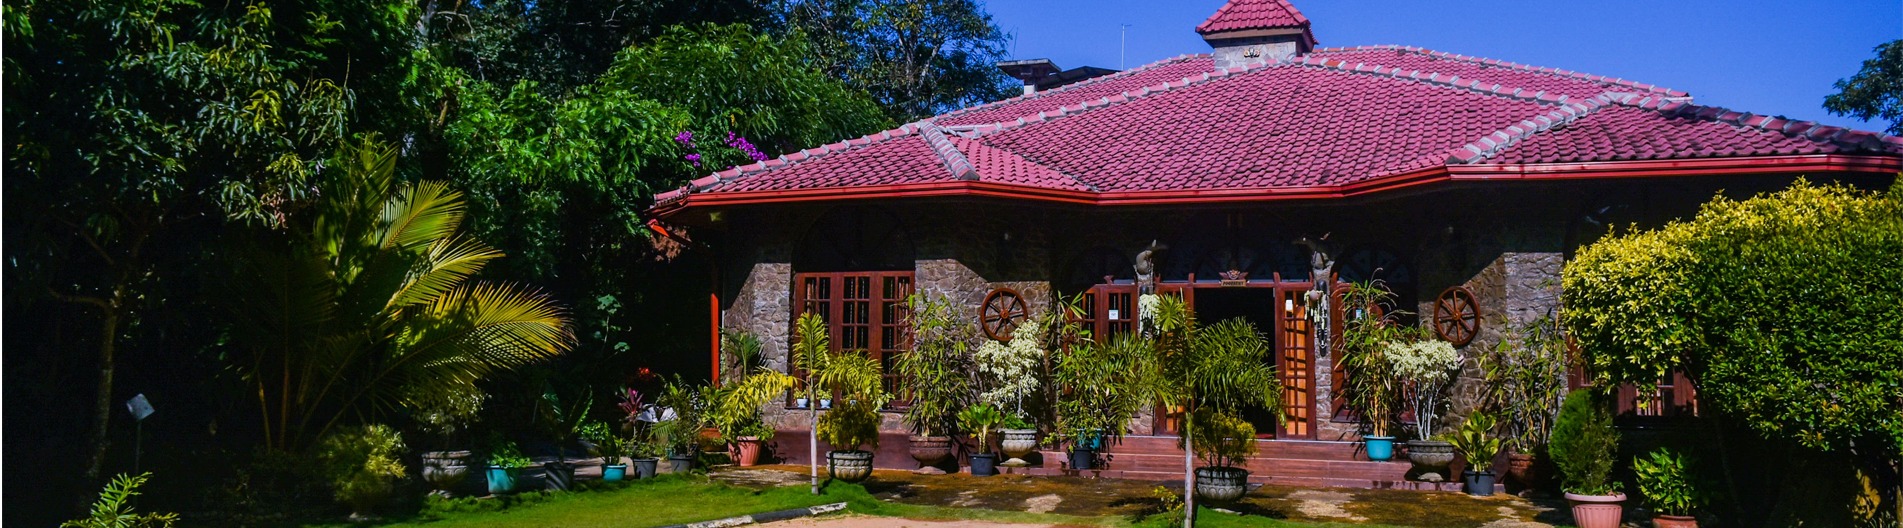 MF estate holiday bungalow Bandarawela sri lanka